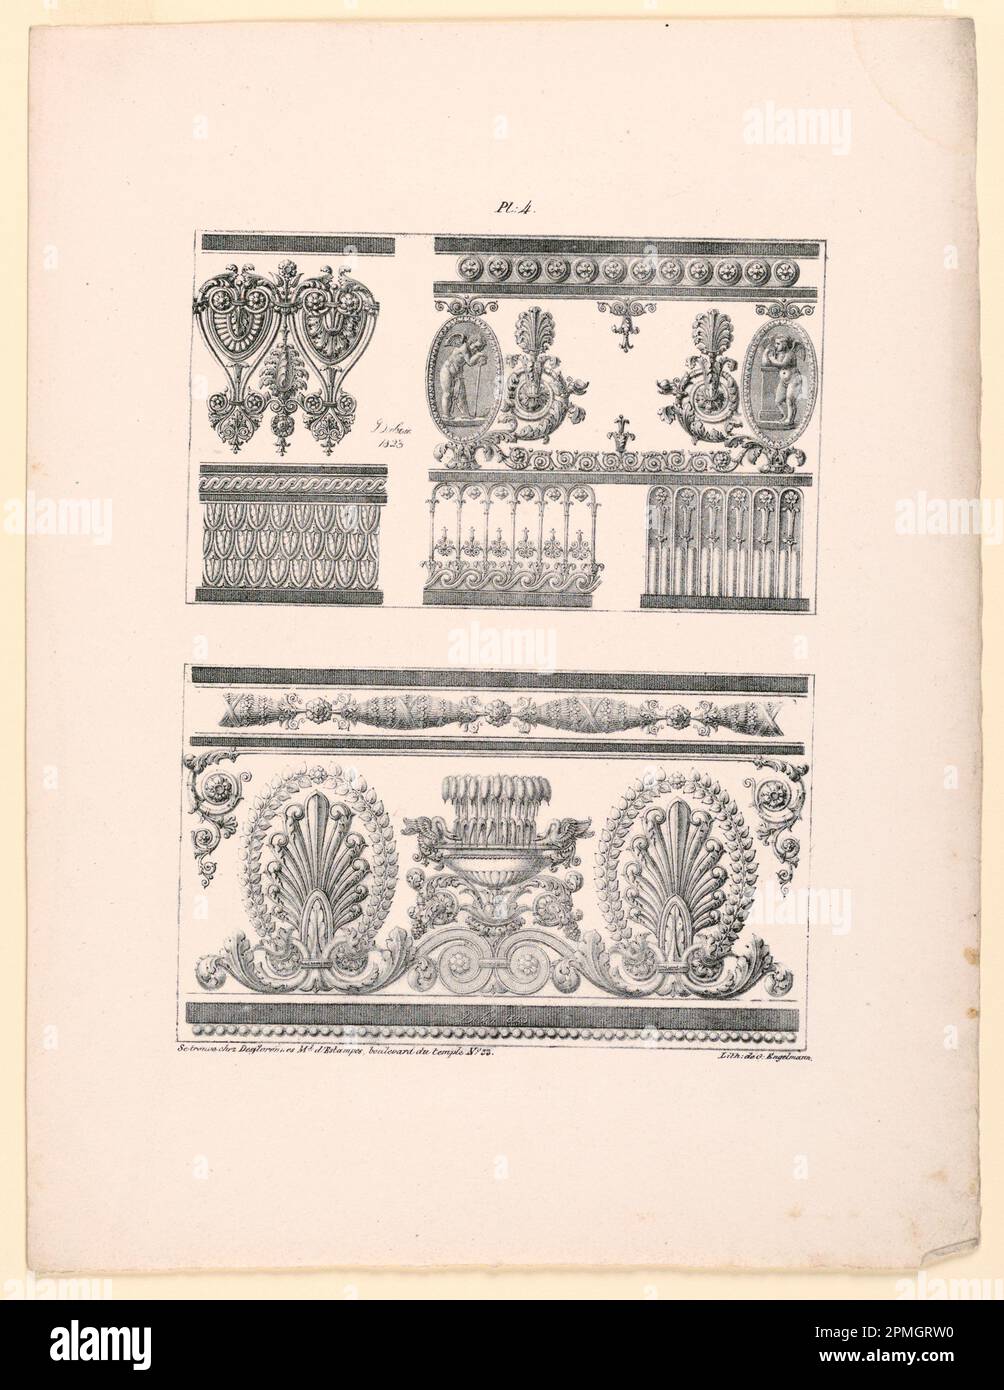 Printmedien, drei Friese, Teller 4 fr; nach Jean DuBois (Französisch, ca. 1750 – nach 1801); gedruckt von Gottfried Engelmann (1788 – 1839); Veröffentlicht von Desflorennes; Frankreich; Lithografieunterstützung: Weißes gewebtes Papier; 35,6 x 27,3 cm (14 x 10 3/4 Zoll) Abmessungen variieren Platemark/Wiederholung: 24,5 x 18,7 cm (9 5/8 x 7 3/8 Zoll) Matte: 45,7 x 35,6 cm (18 x 14 Zoll) Stockfoto